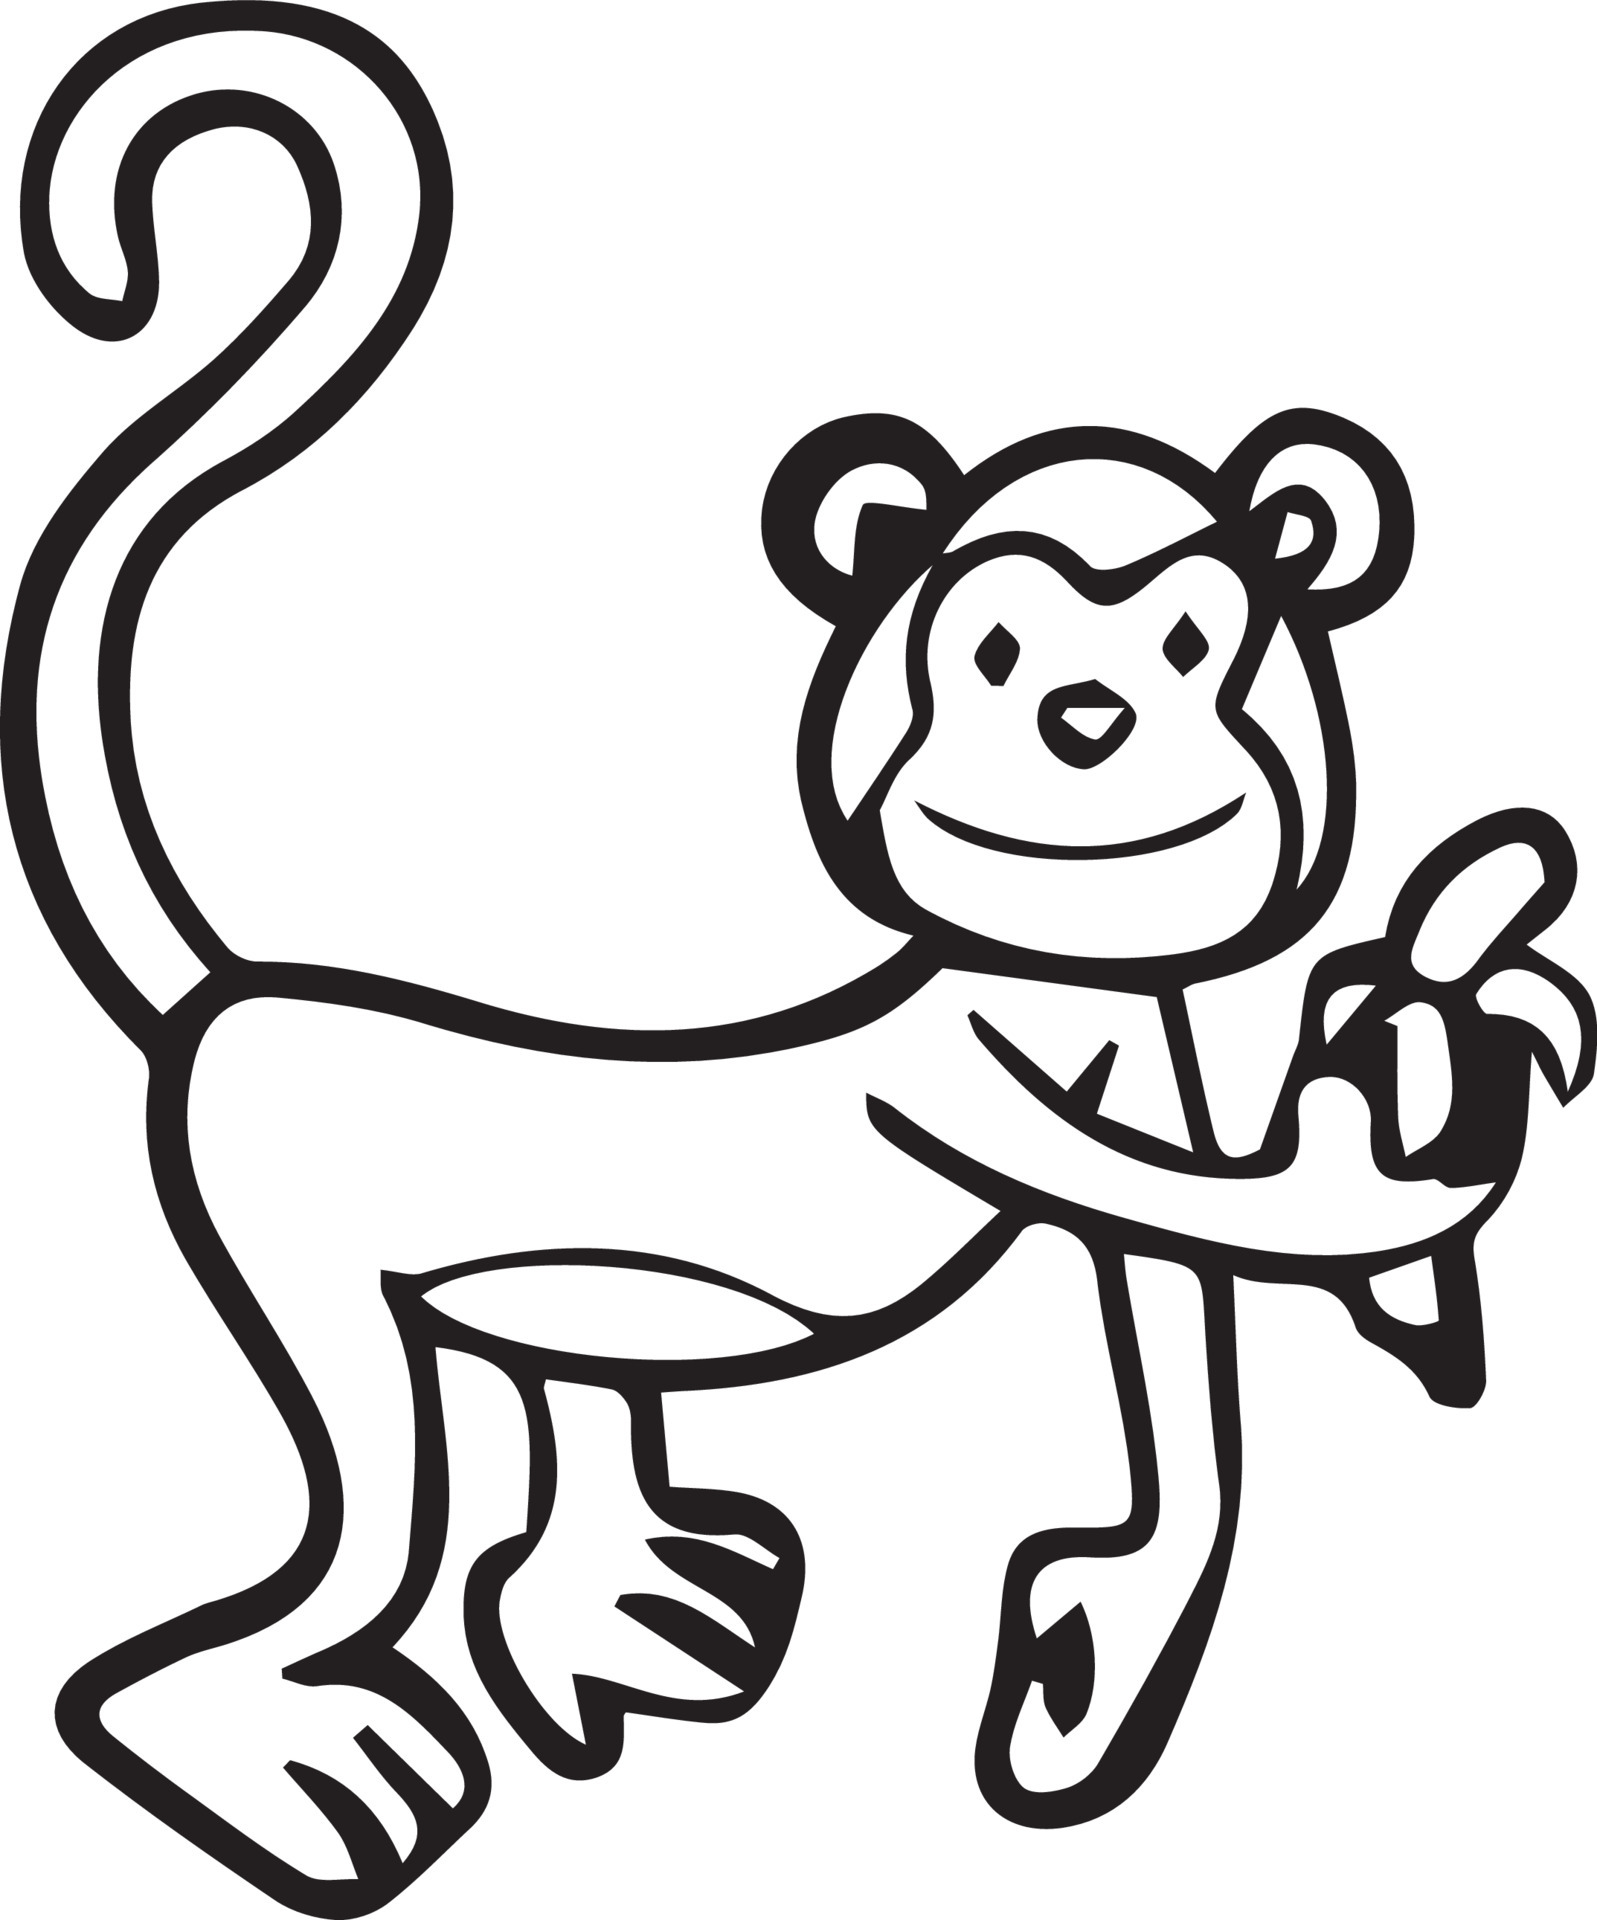 macaco para colorir página de desenho bonito desenho ilustração download  grátis 5021146 Vetor no Vecteezy